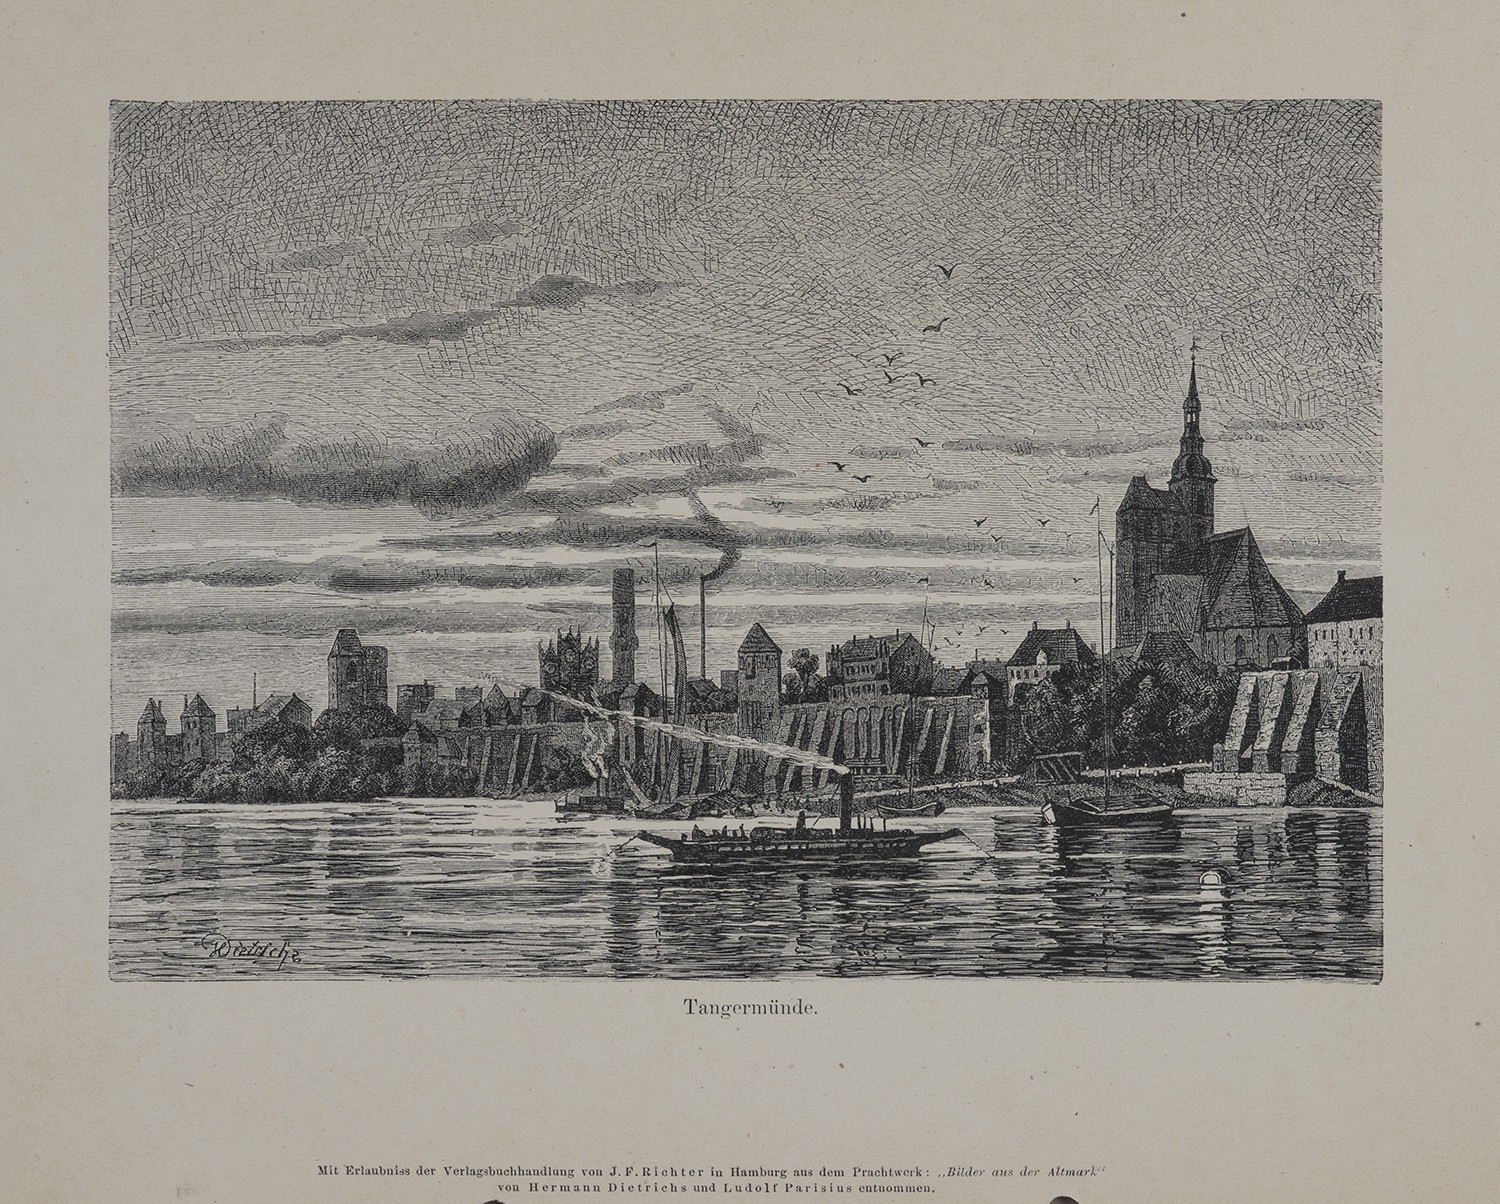 Tangermünde (Kr. Stendal): Ansicht von der Elbe (Landesgeschichtliche Vereinigung für die Mark Brandenburg e.V., Archiv CC BY)